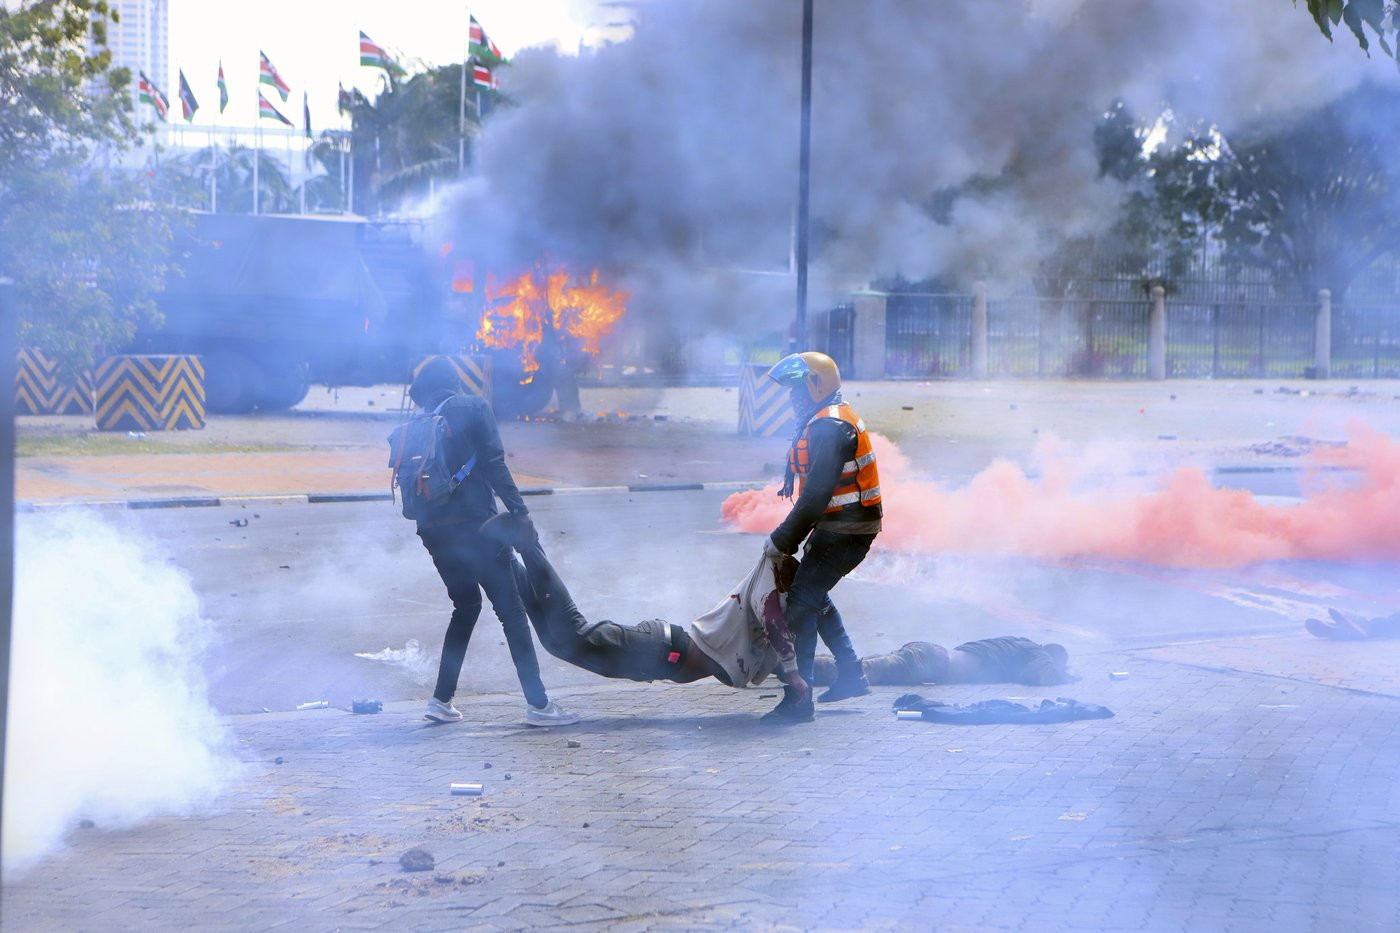 Le Parlement du Kenya brûle alors que des manifestants s’opposent aux nouvelles taxes